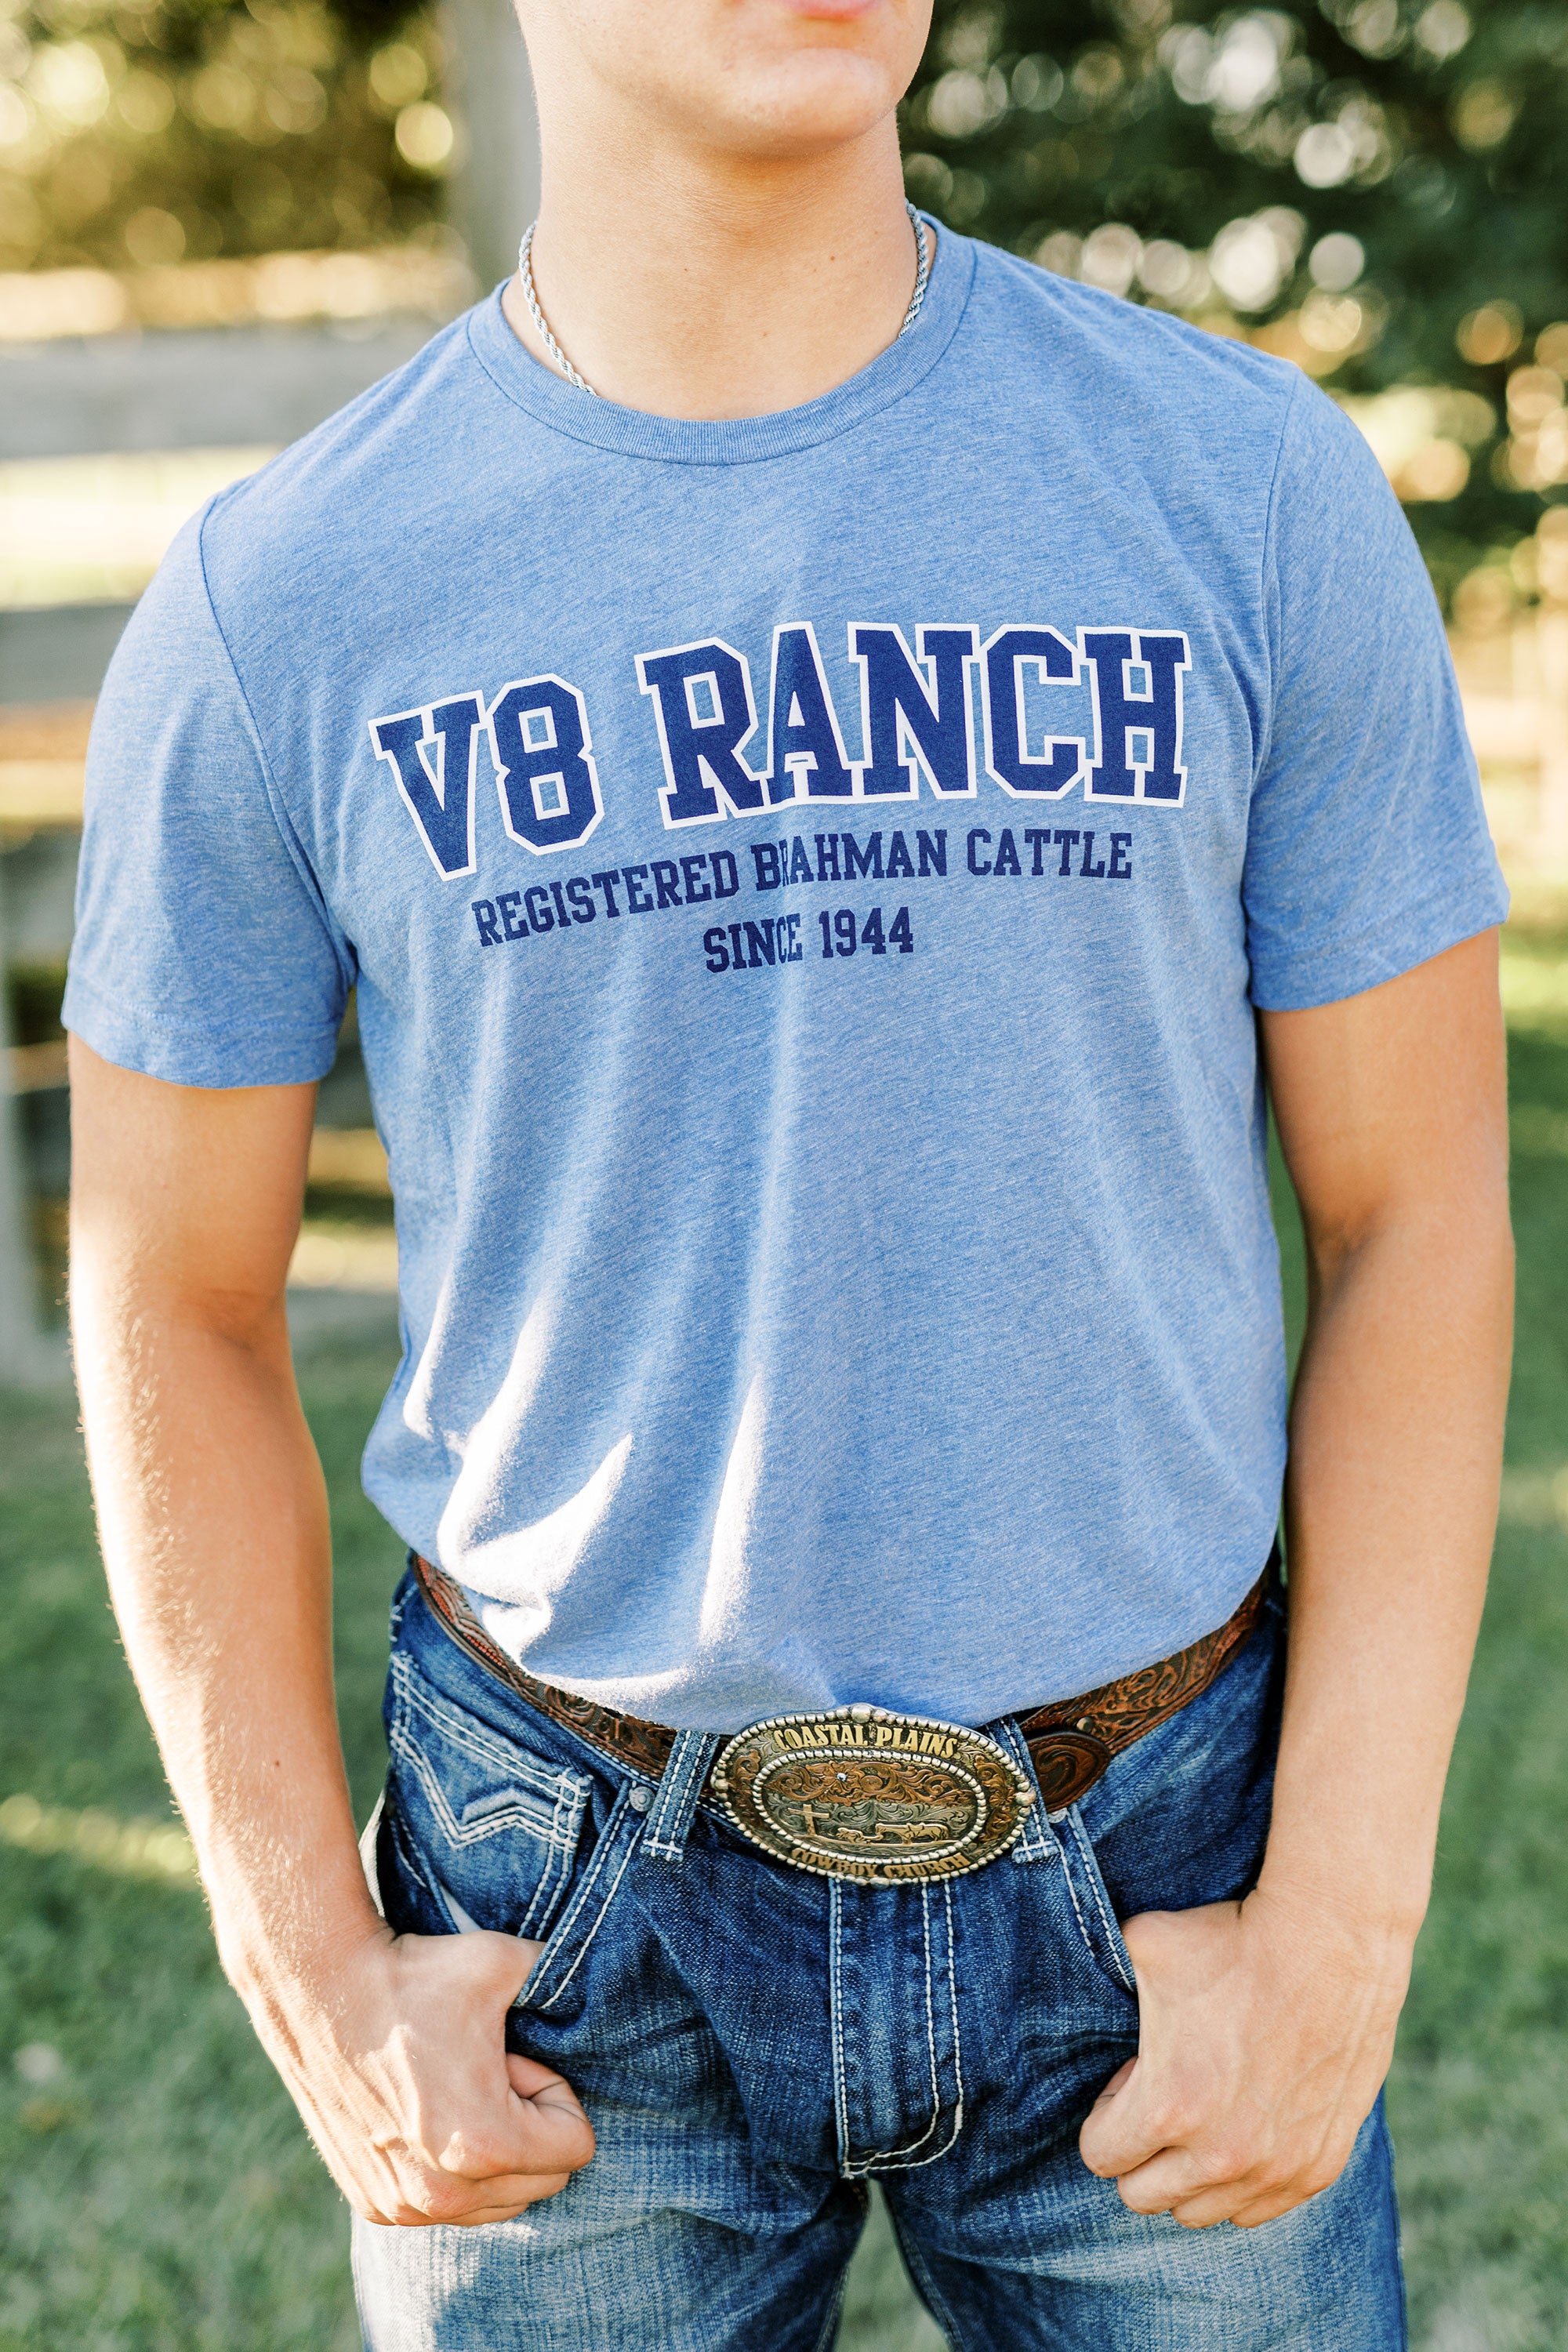 Blue V8 Ranch Established 1944 Tee